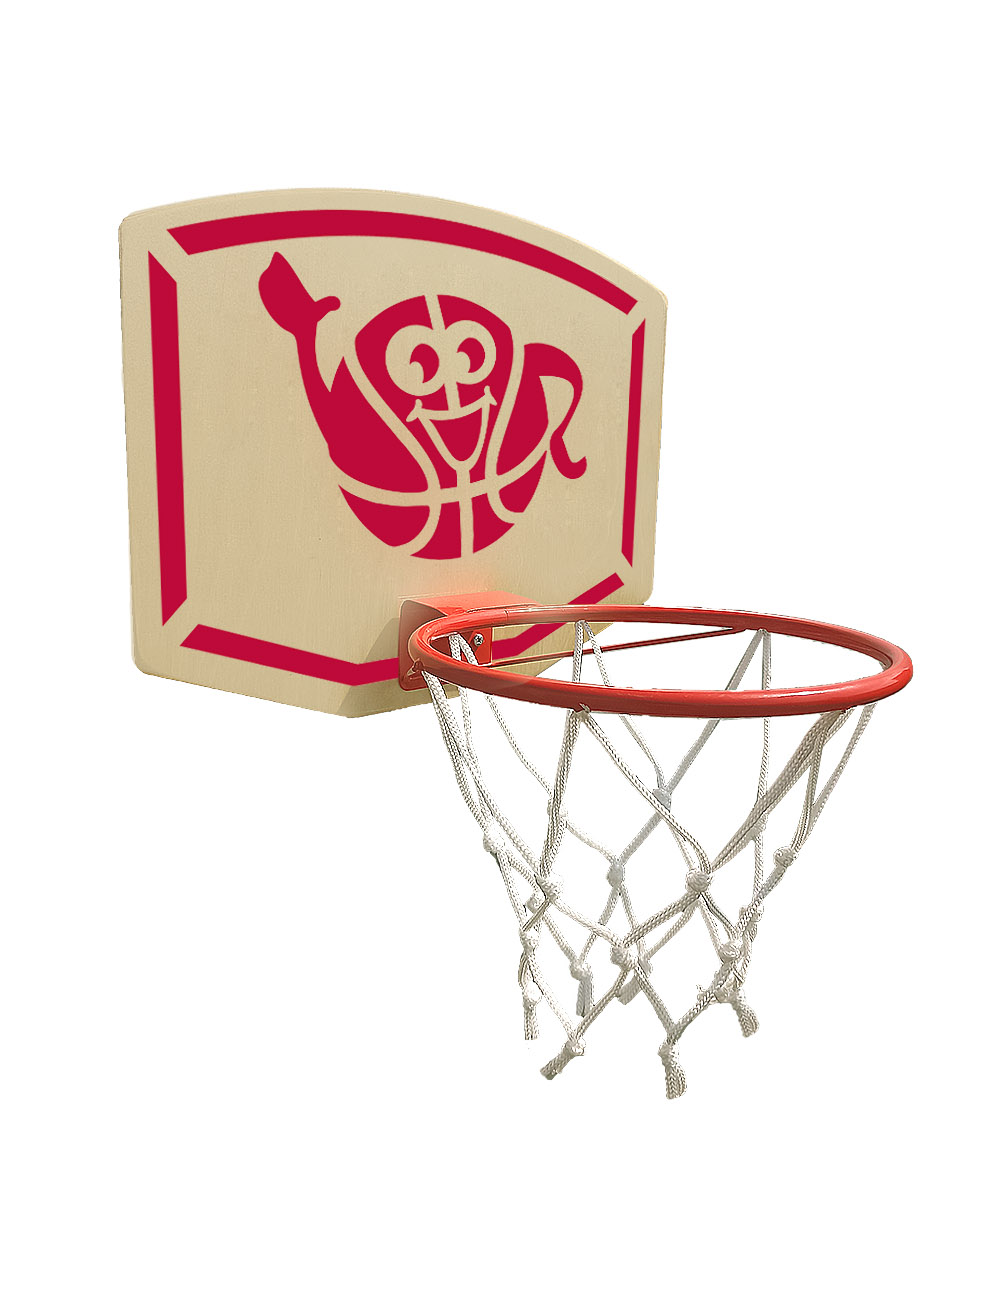 Баскетбольный щит с корзиной 22см для малышей